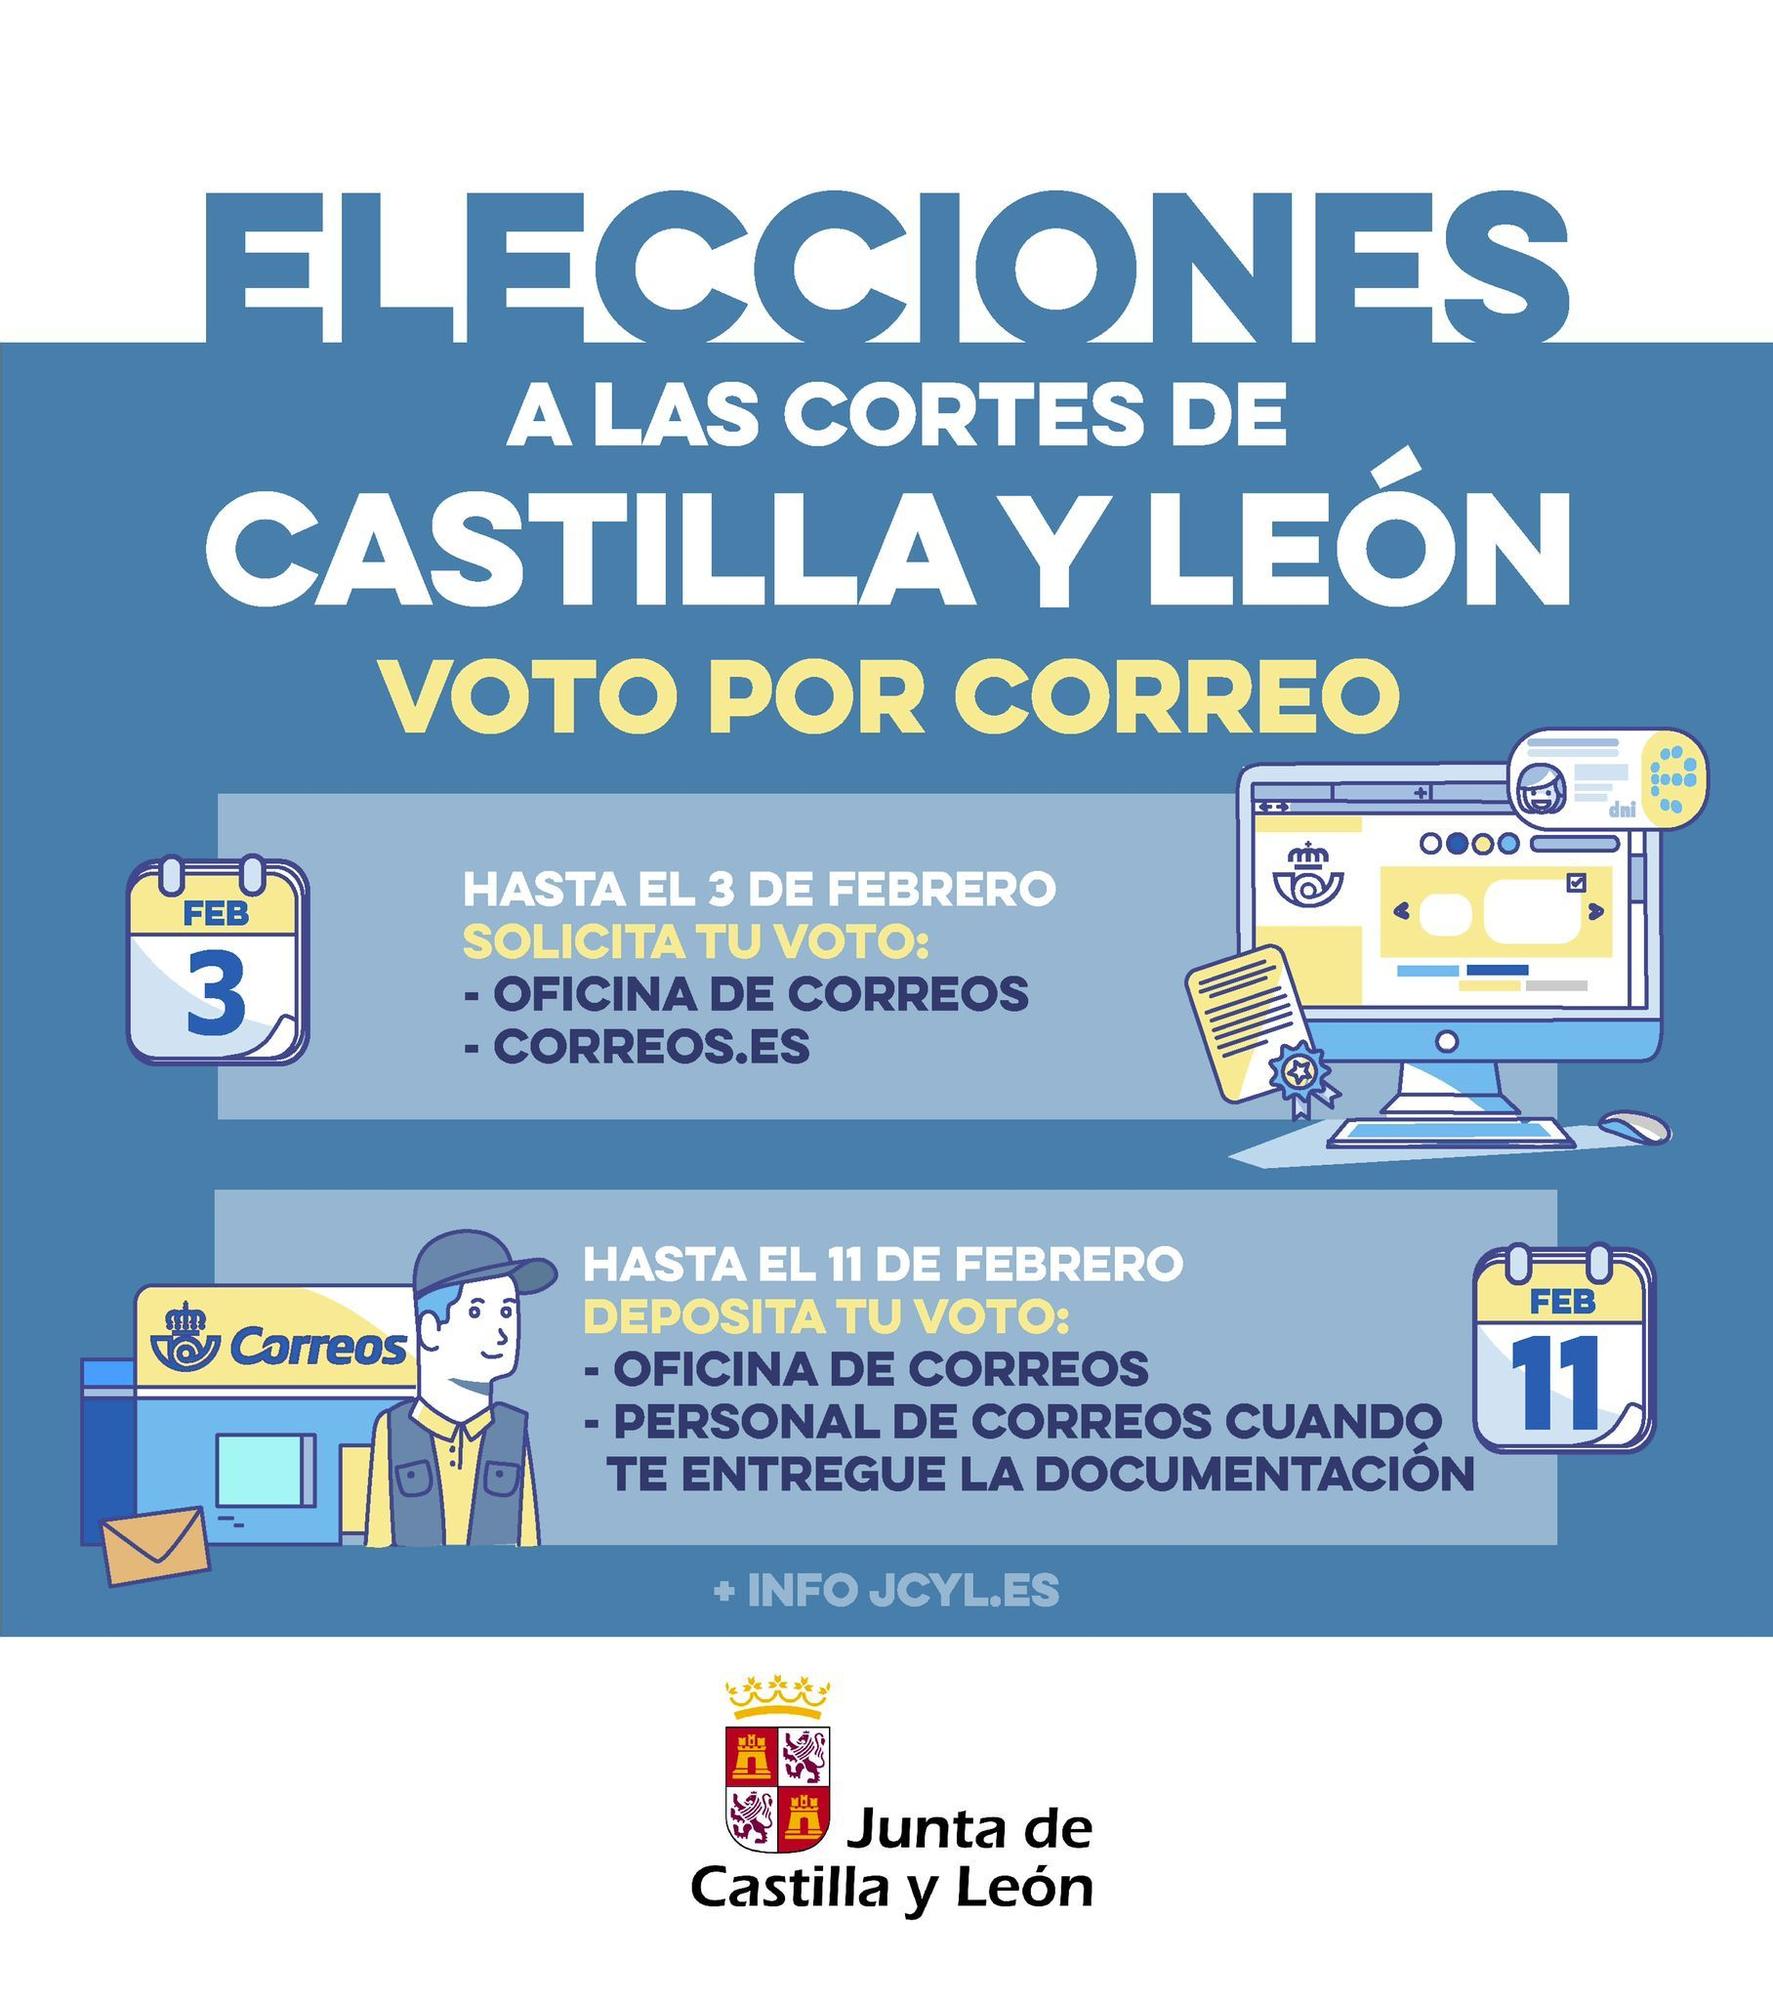 Cómo votar por correo en las elecciones de Castilla y León.